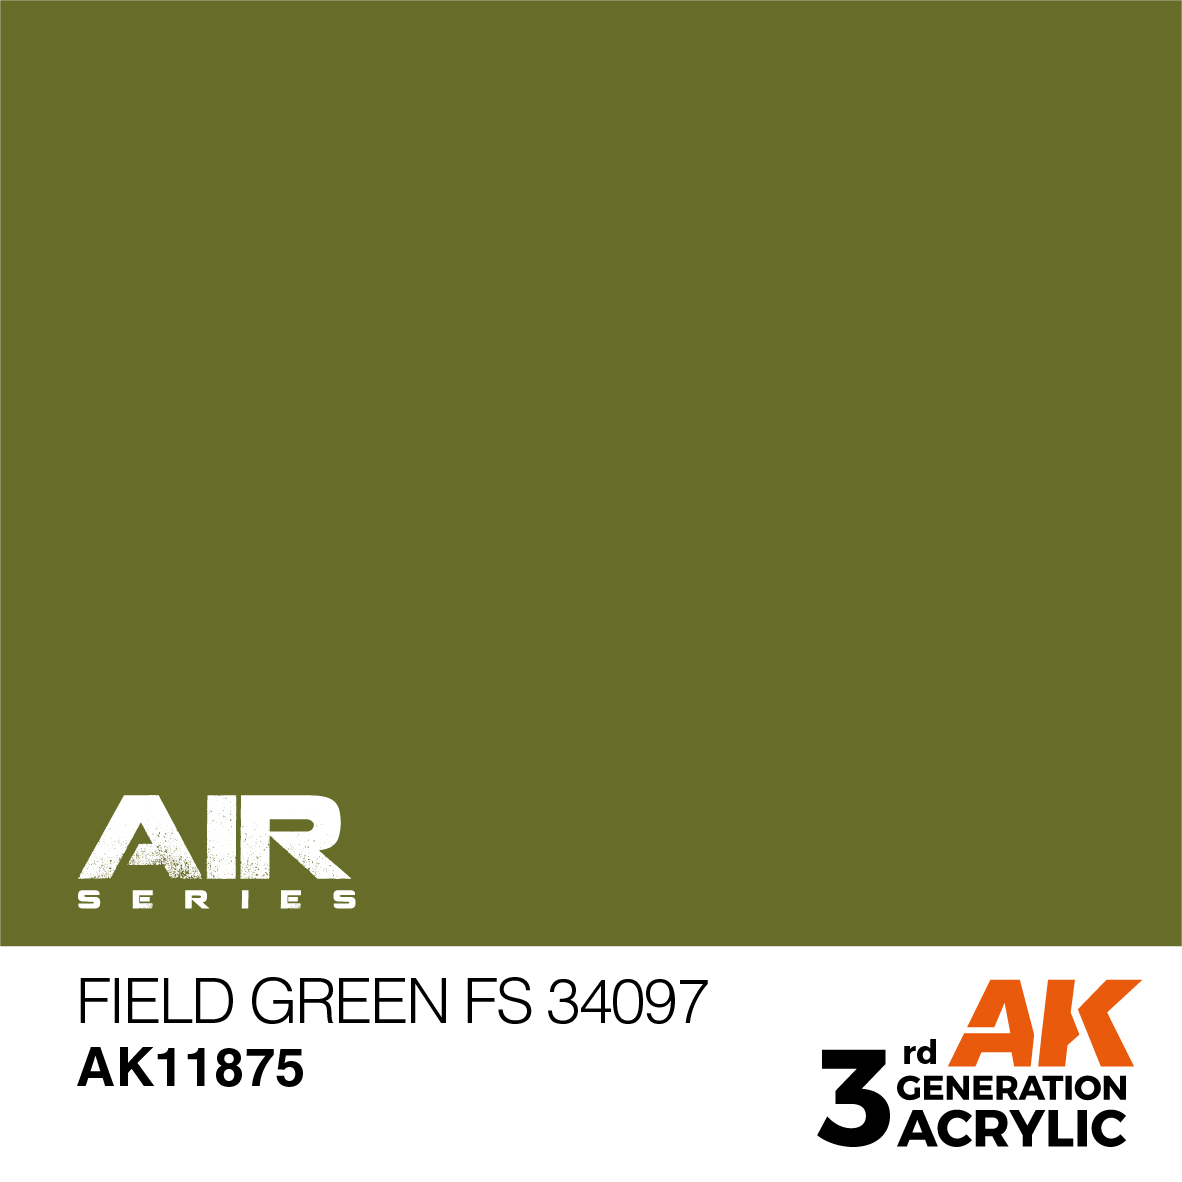 Field Green FS 34097 – AIR